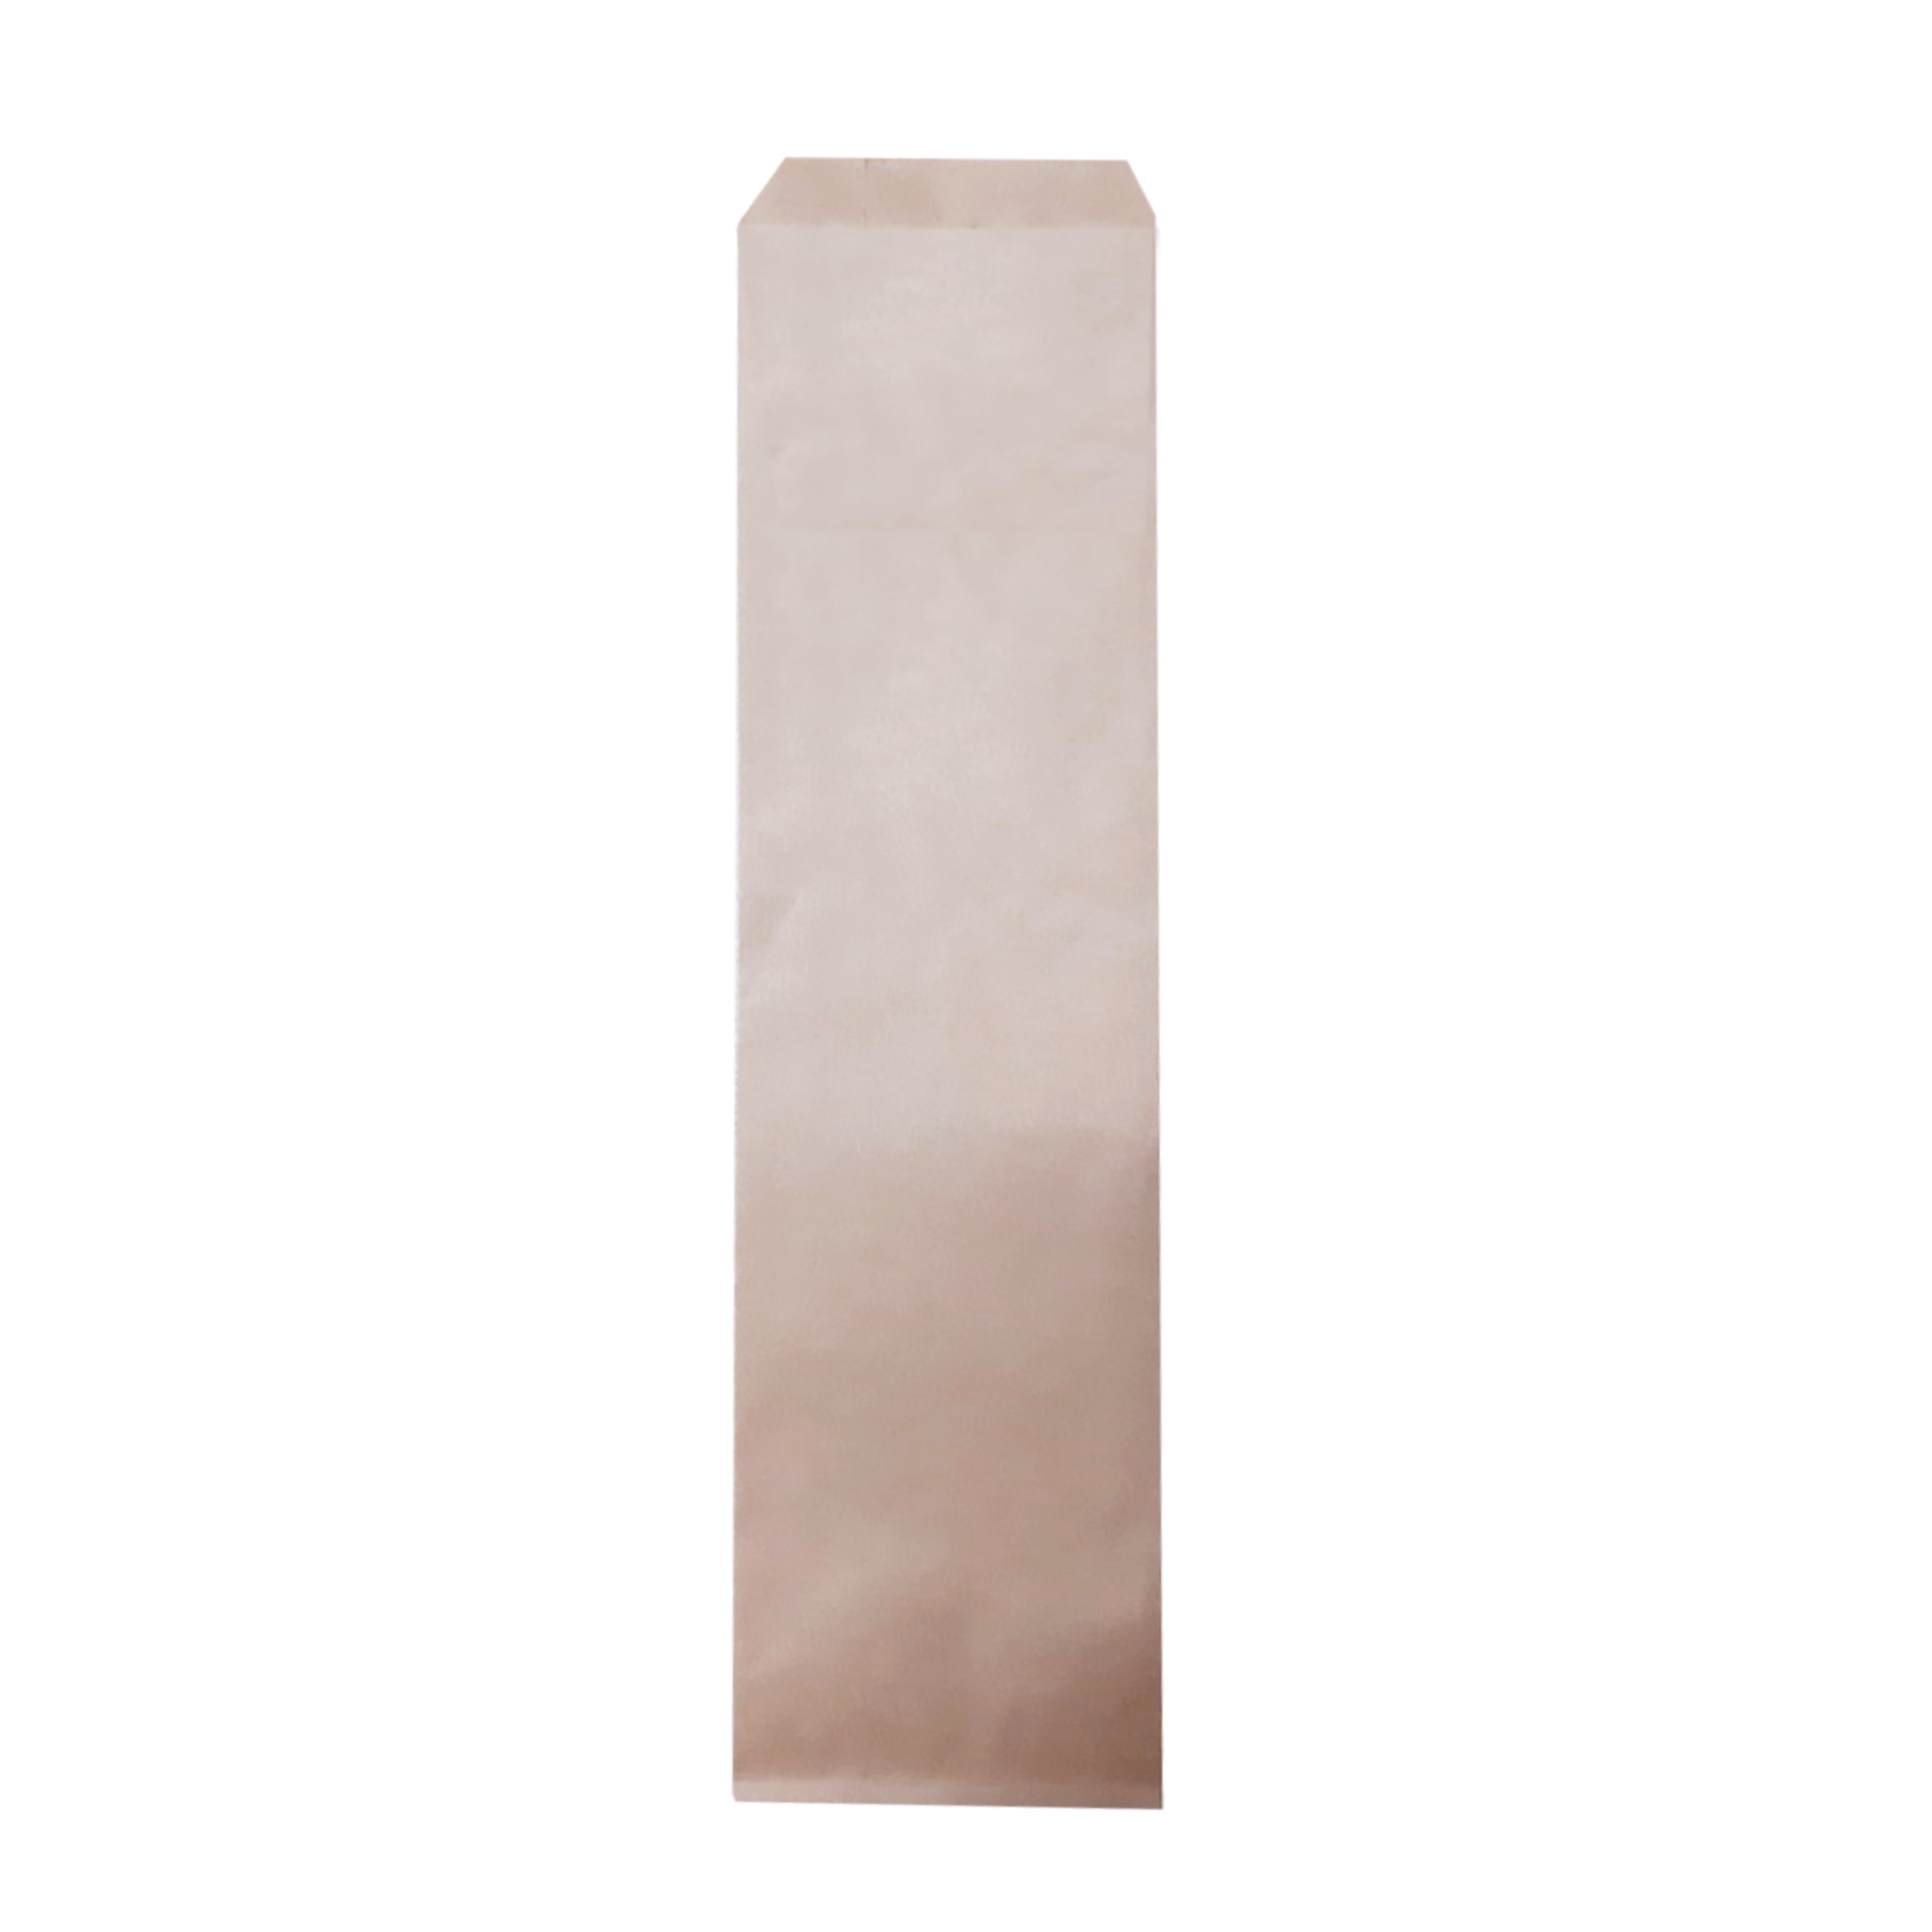  Túi giấy bánh mỳ que 7x30cm 